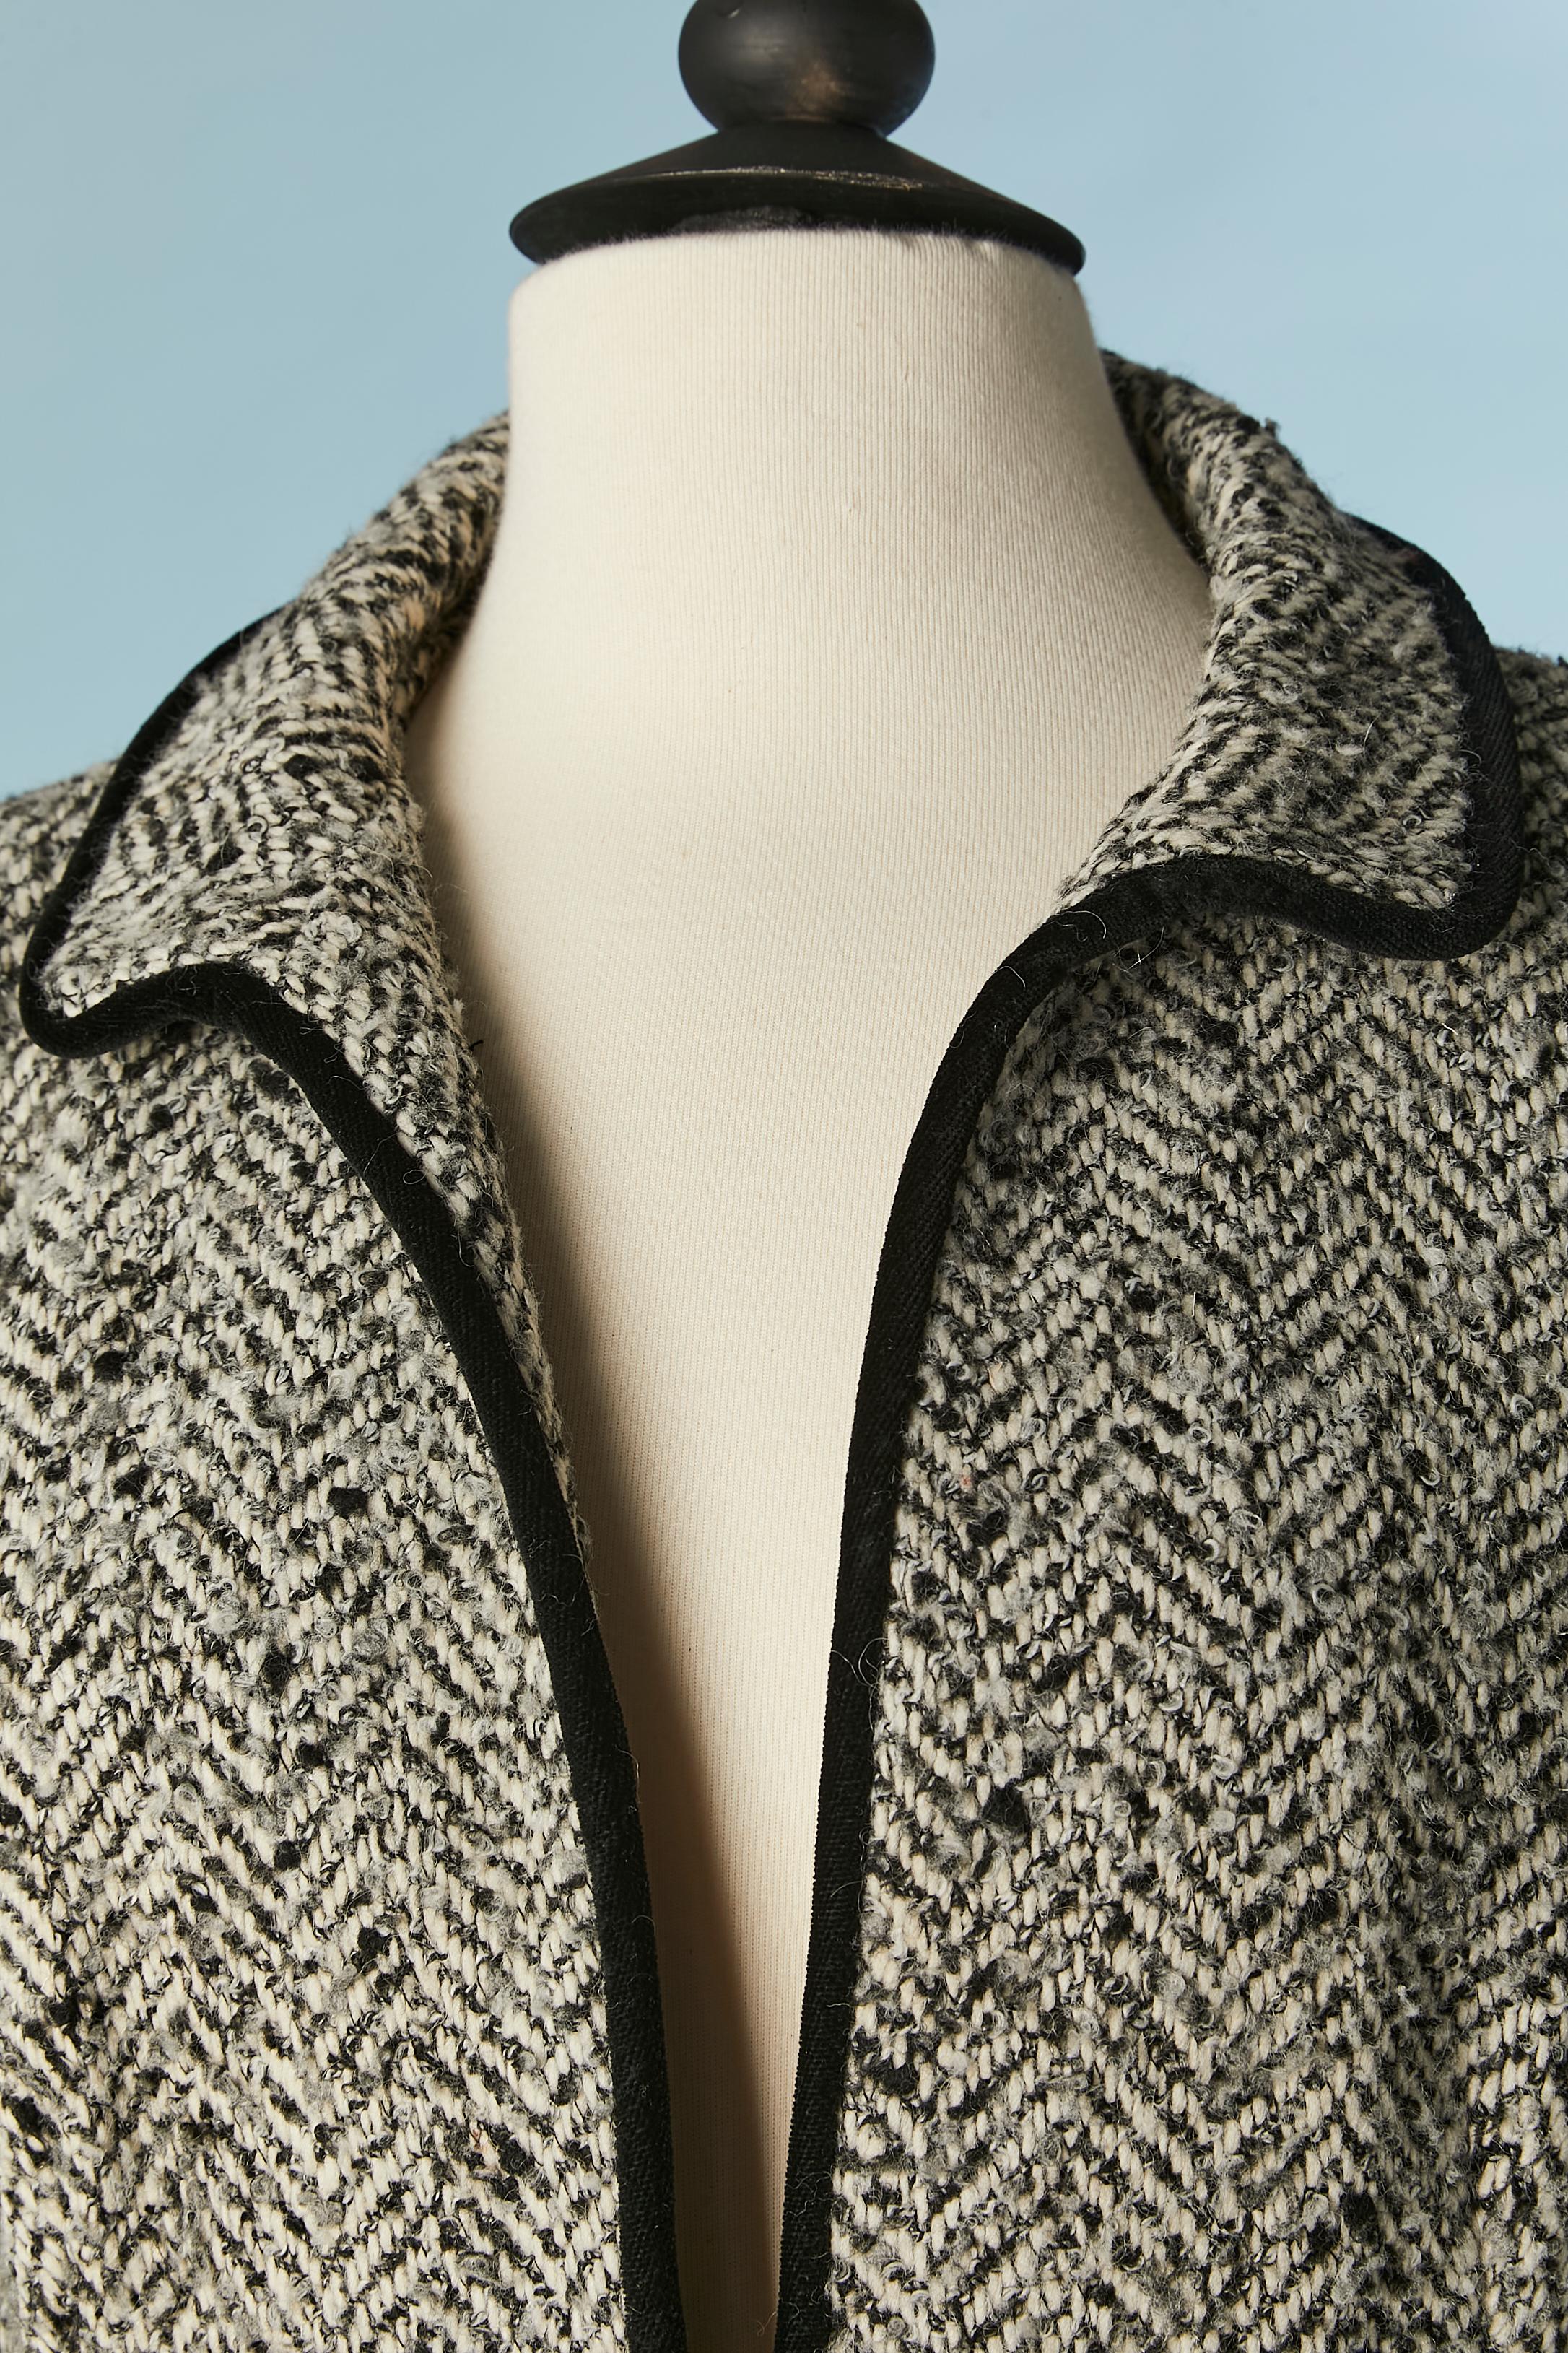 Combinaison jupe en laine à chevrons avec bord et nœud en velours noir. 
Composition du tissu principal : 48% laine, 30% acrylique, 15% nylon, 4% polyester, 3% rayonne. Doublure : acétate et rayonne. 
Epaulettes. Fermeture auto-agrippante sur le